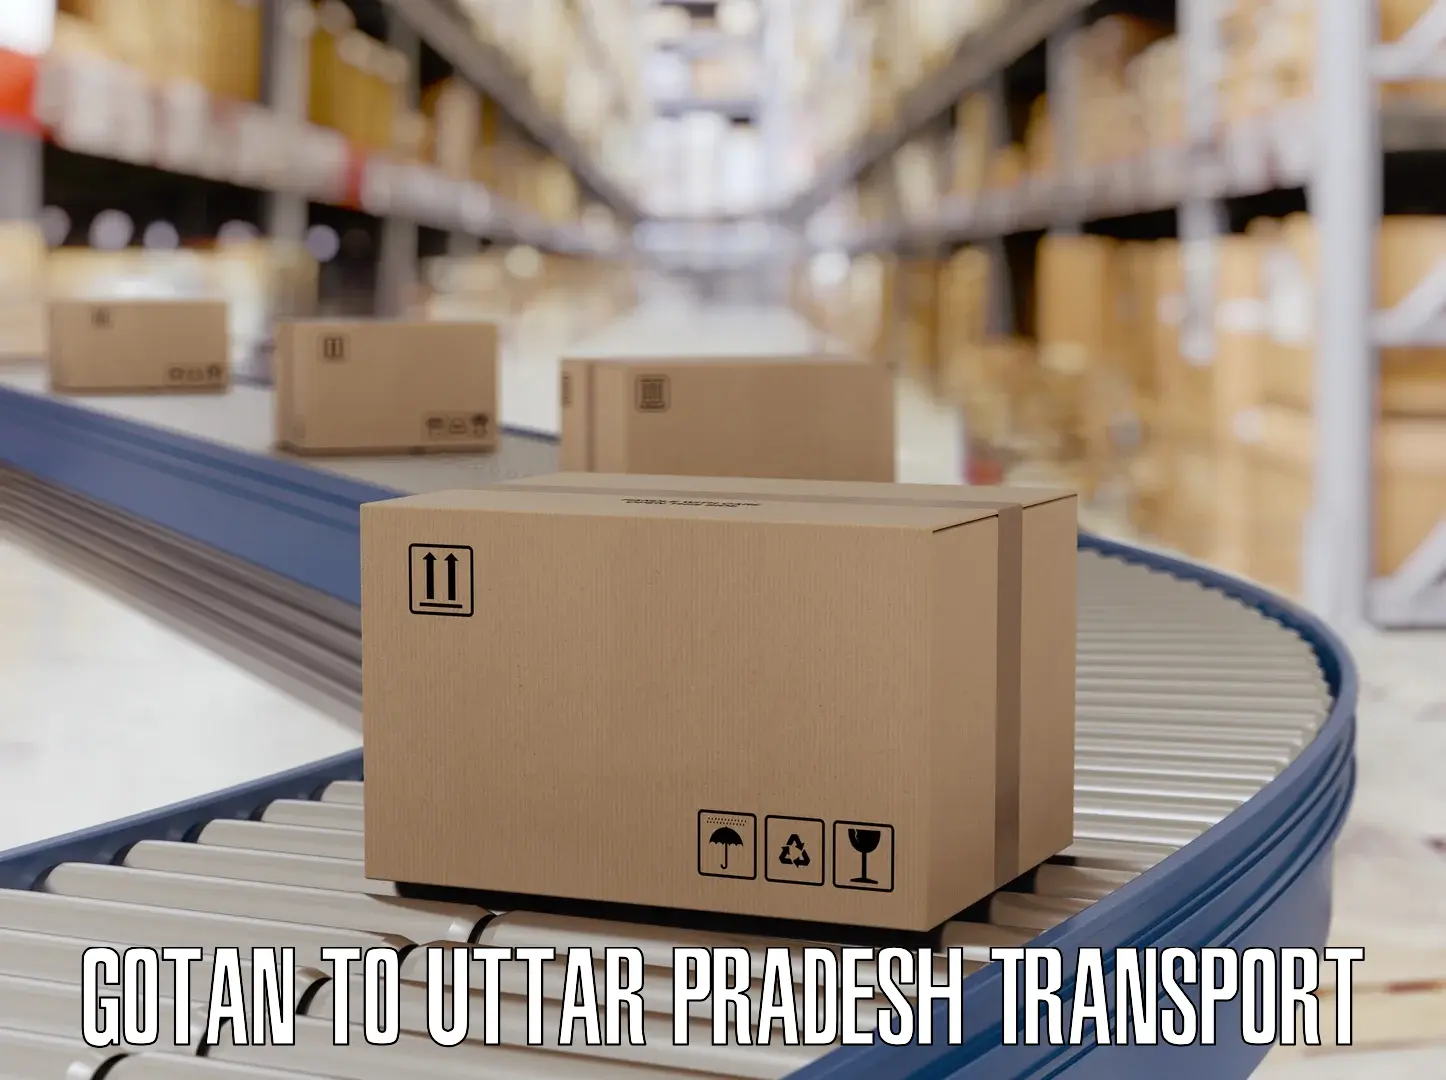 Vehicle parcel service Gotan to Prayagraj